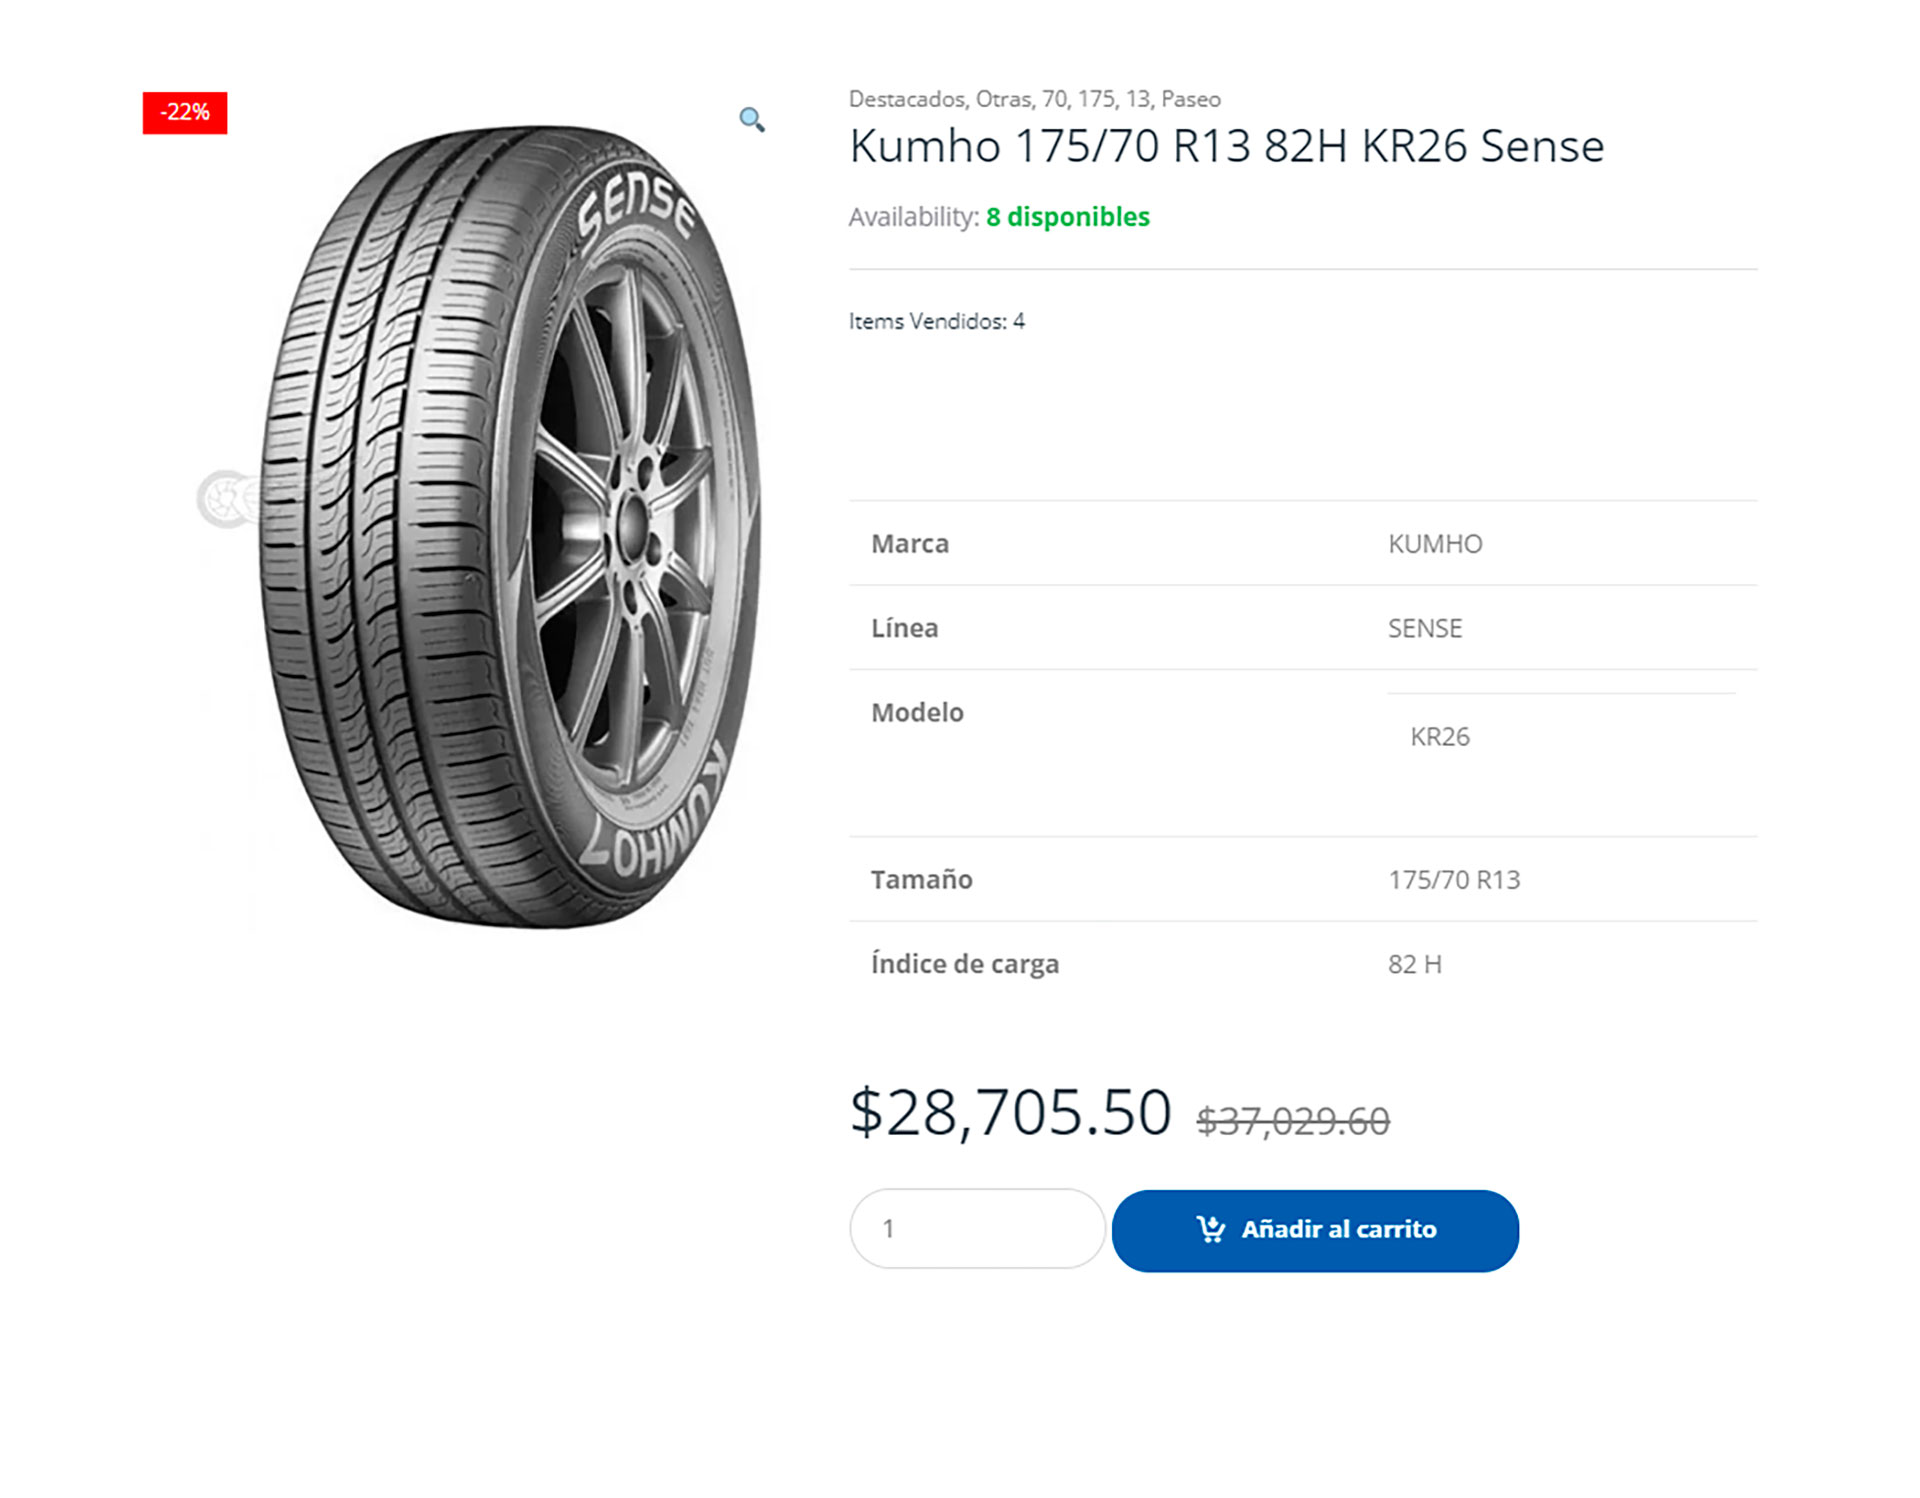 El neumático Kumho 175/70 R13 82H KR26 Sense se encuentra a $28.705,50 pesos